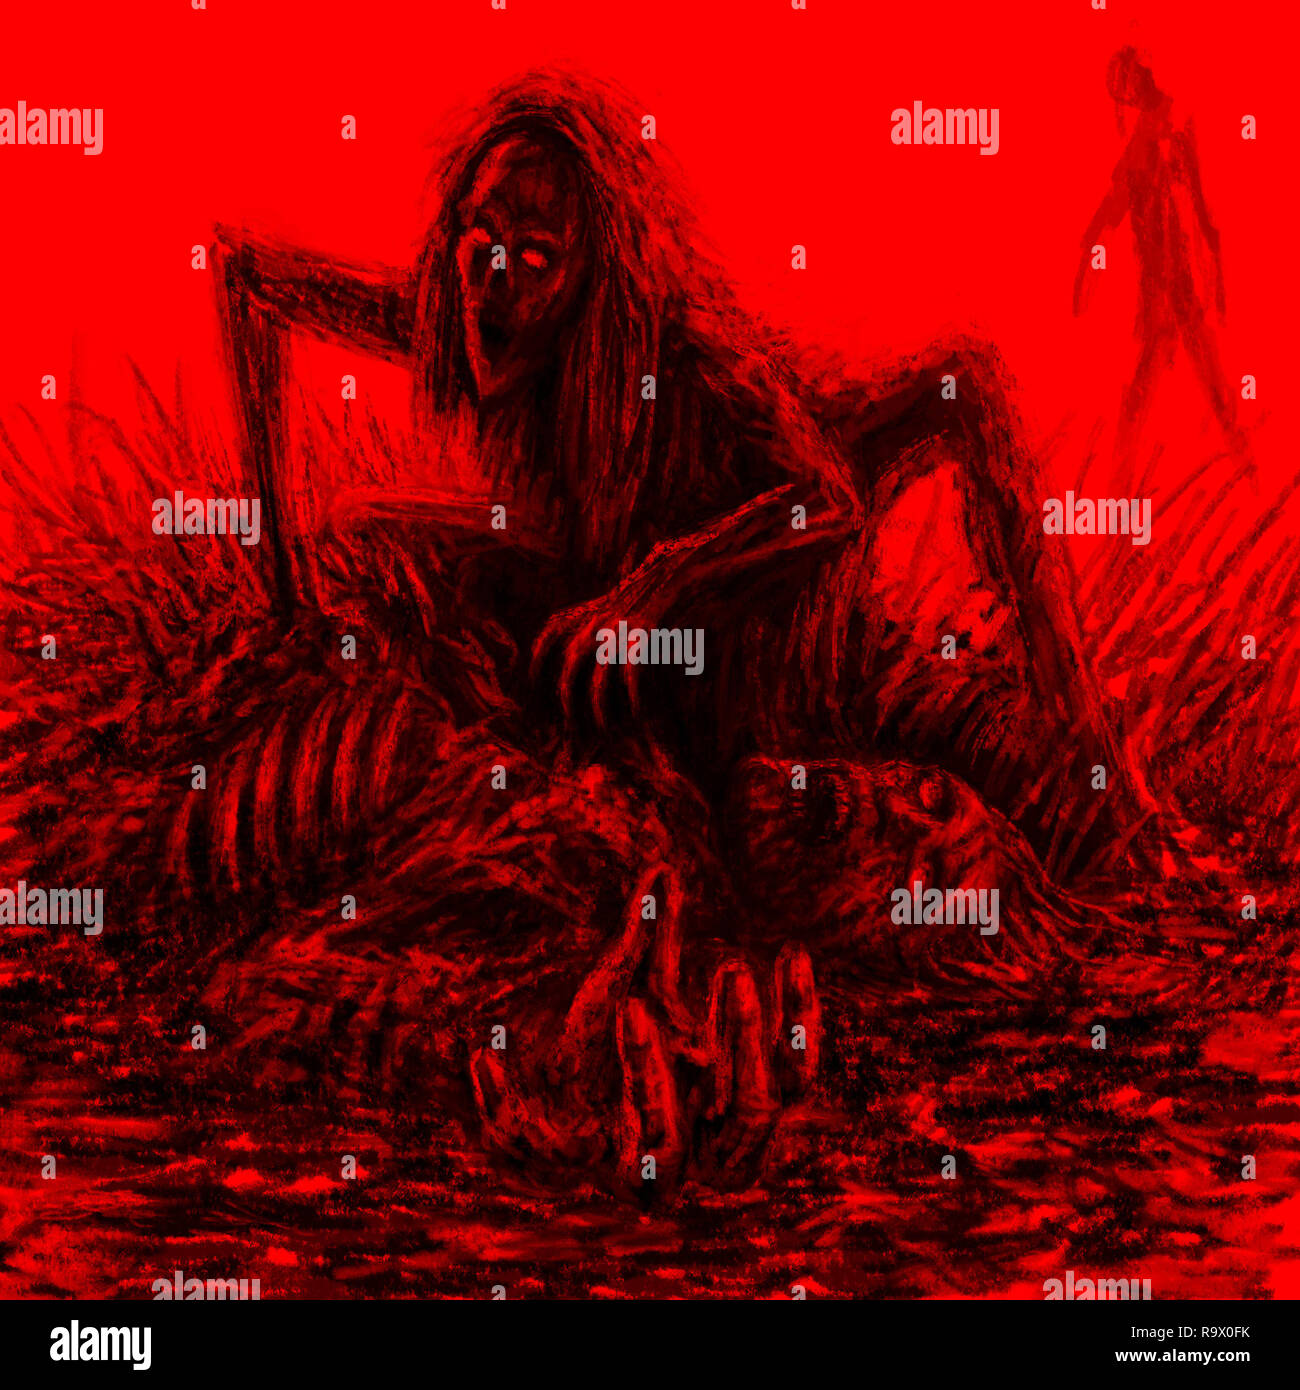 Zombie effrayant femme assise et mange sur fond rouge. Illustration de genre d'horreur. Banque D'Images